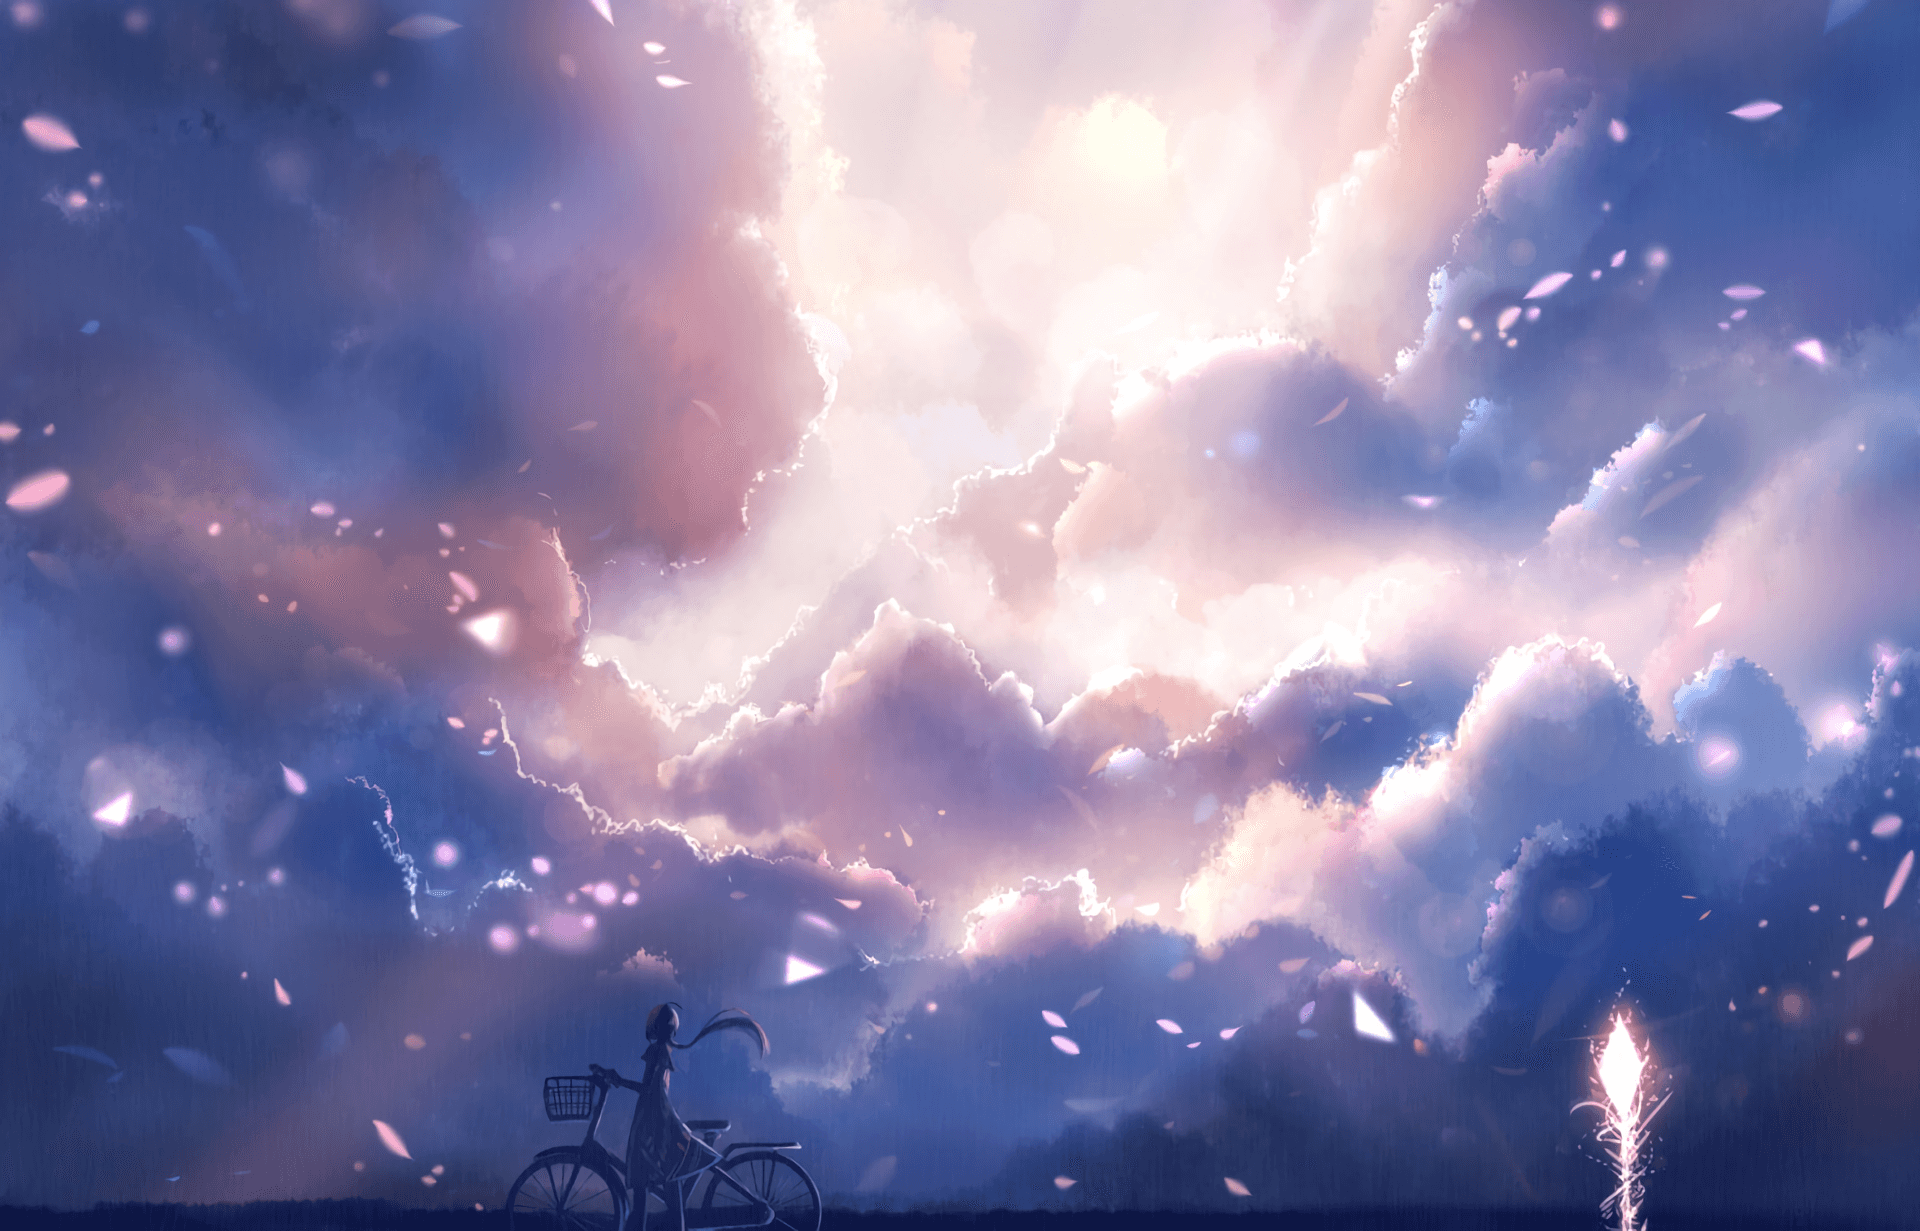 Buscay Encuentra Infinitas Posibilidades En Este Cielo Temático De Anime.